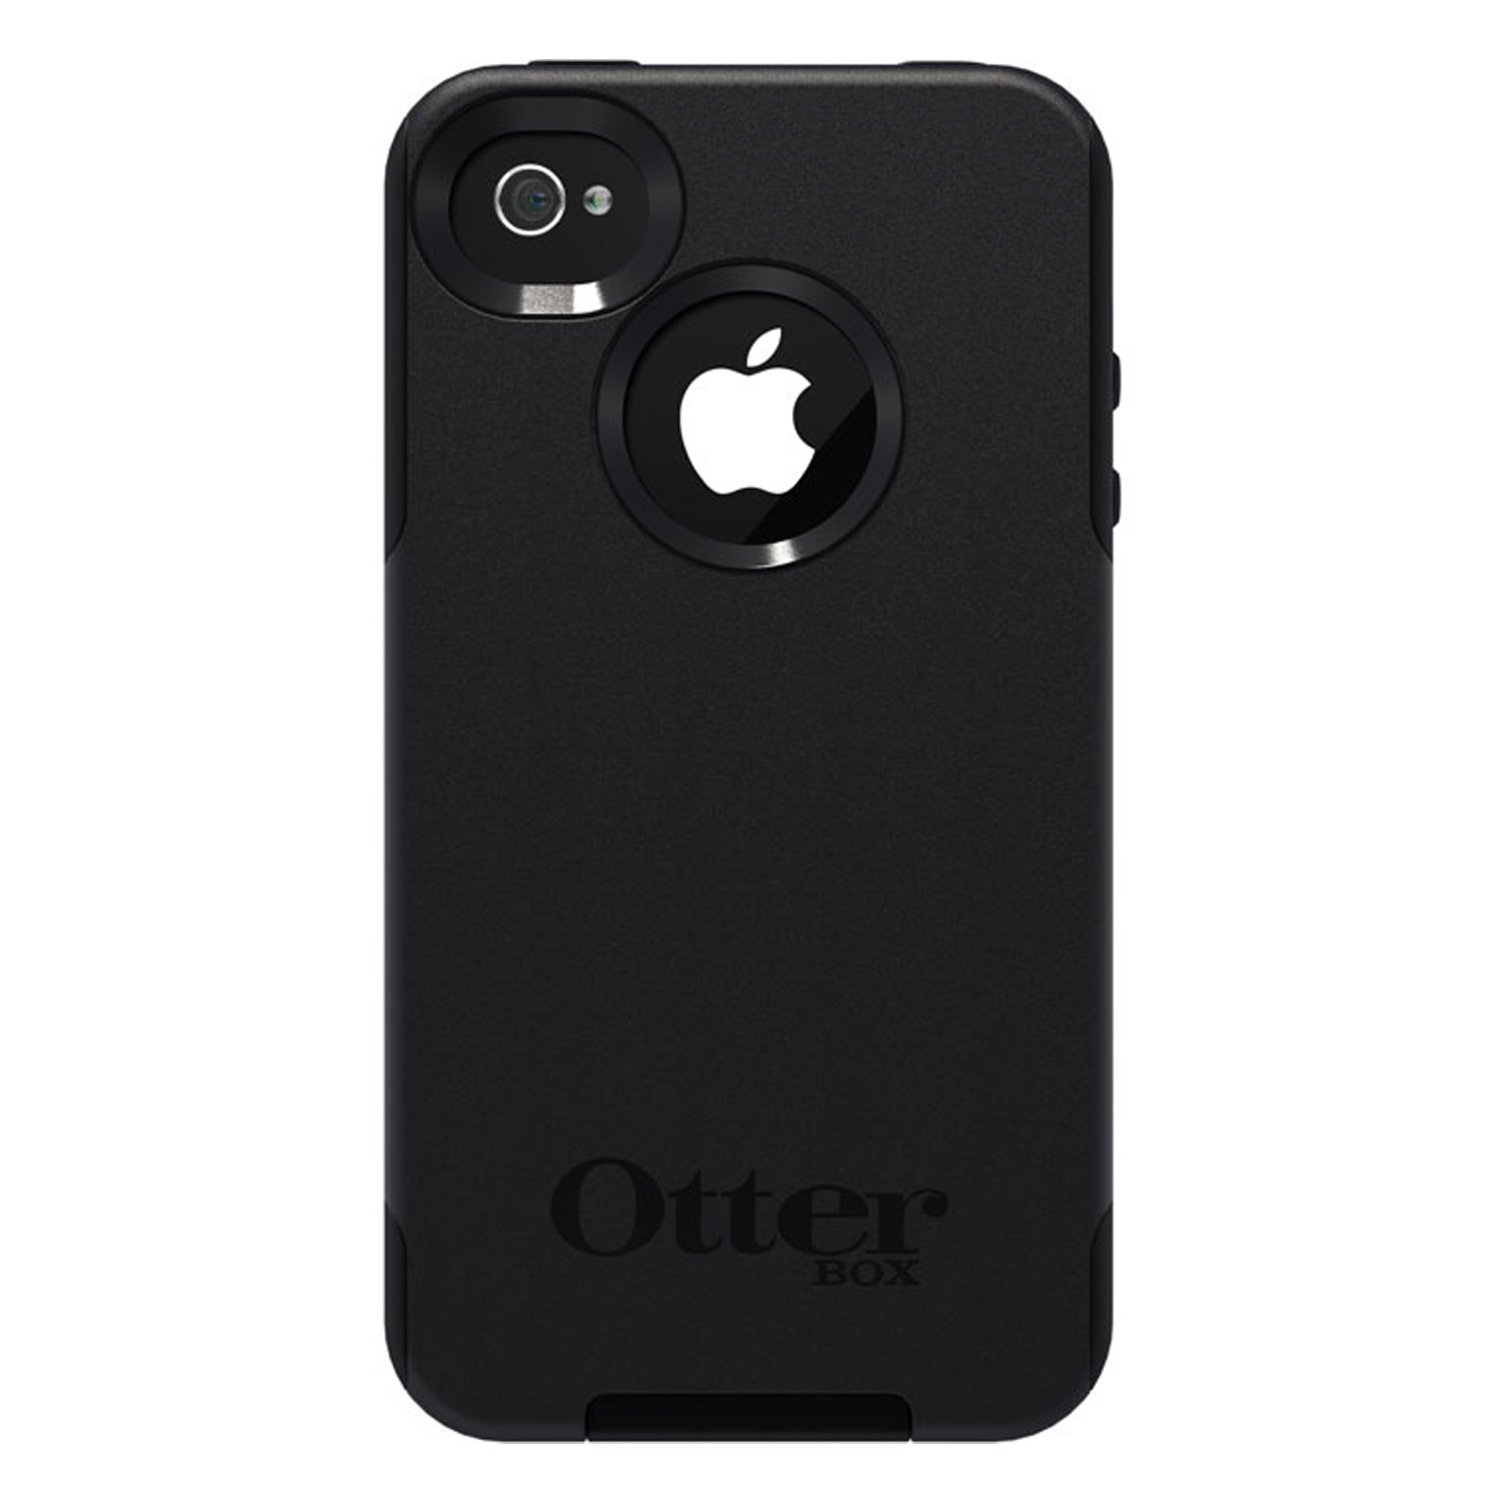 Otterbox 通勤者系列 iPhone 4 / 4S 手机保护套 (黑色) $16.10